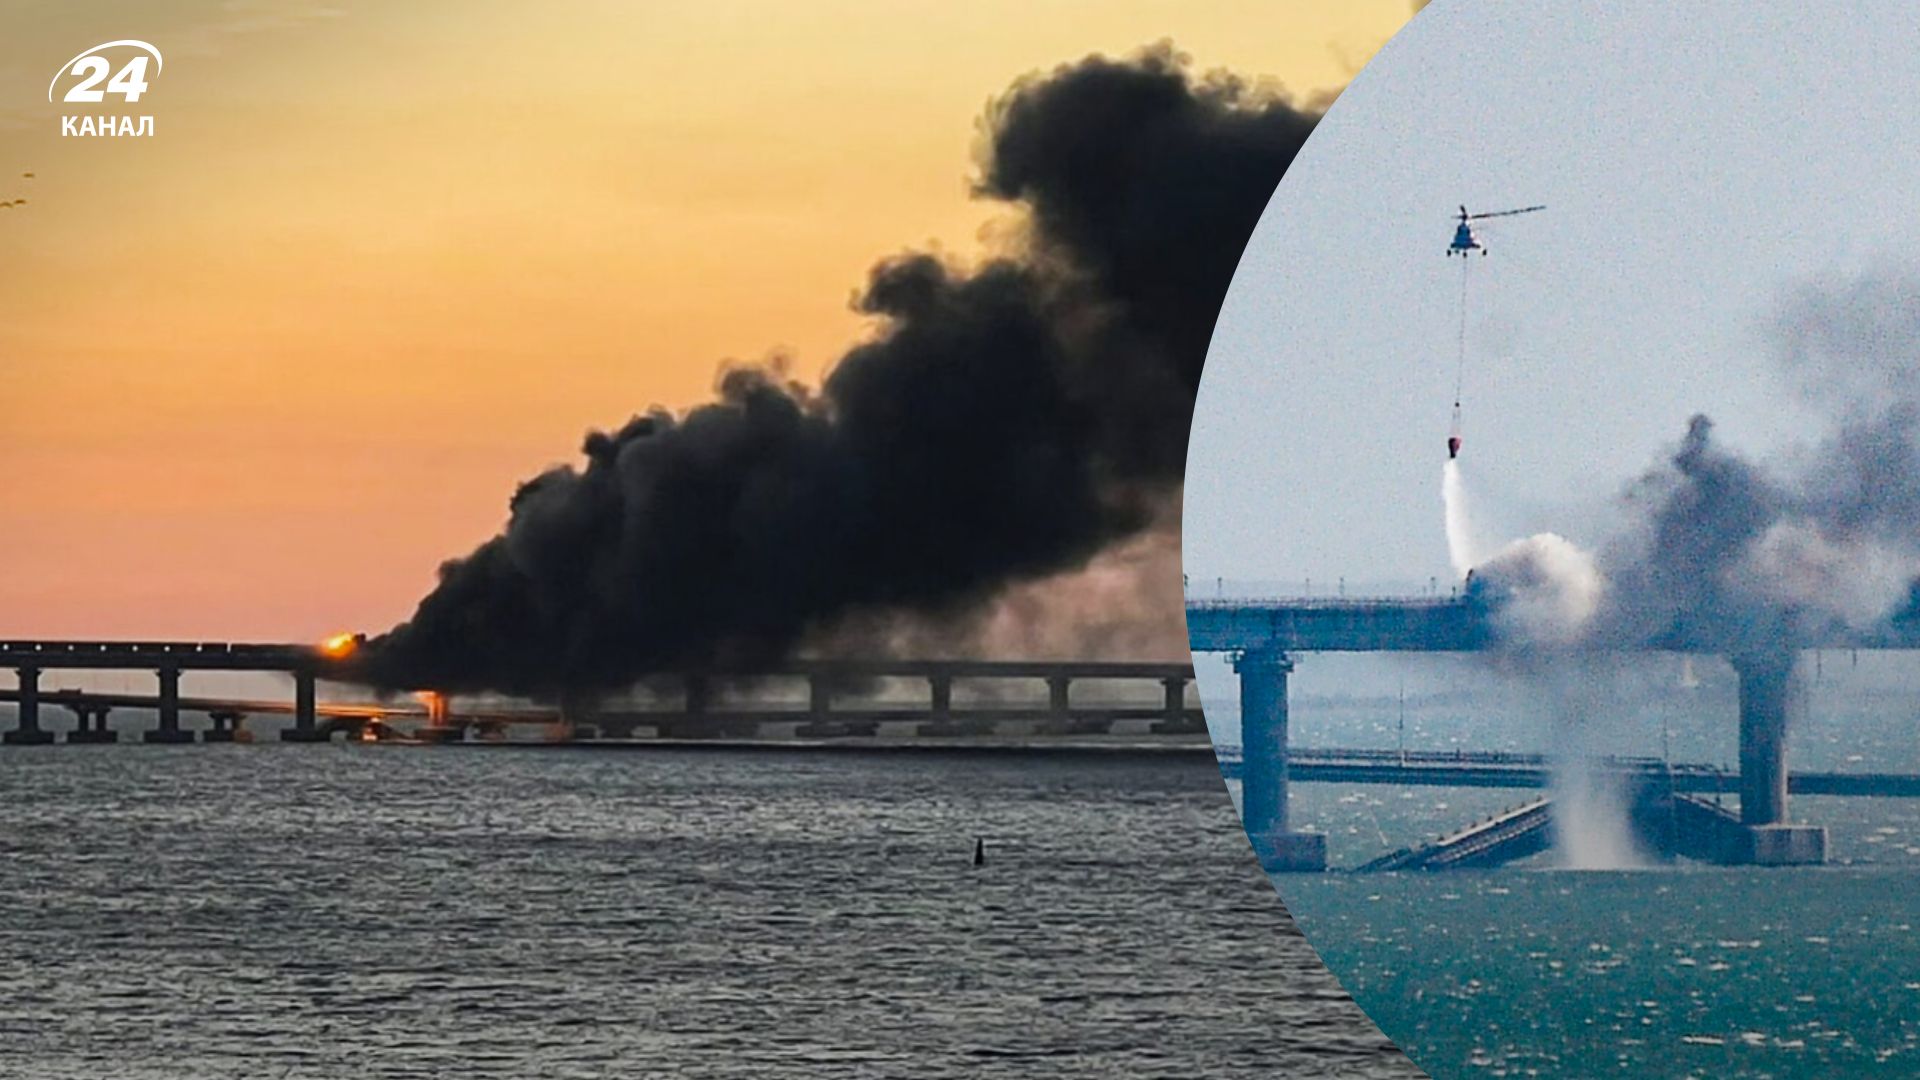 Крымский мост взрыв 08.10.2022 - в России были первые суды над  фигурантами - 24 Канал